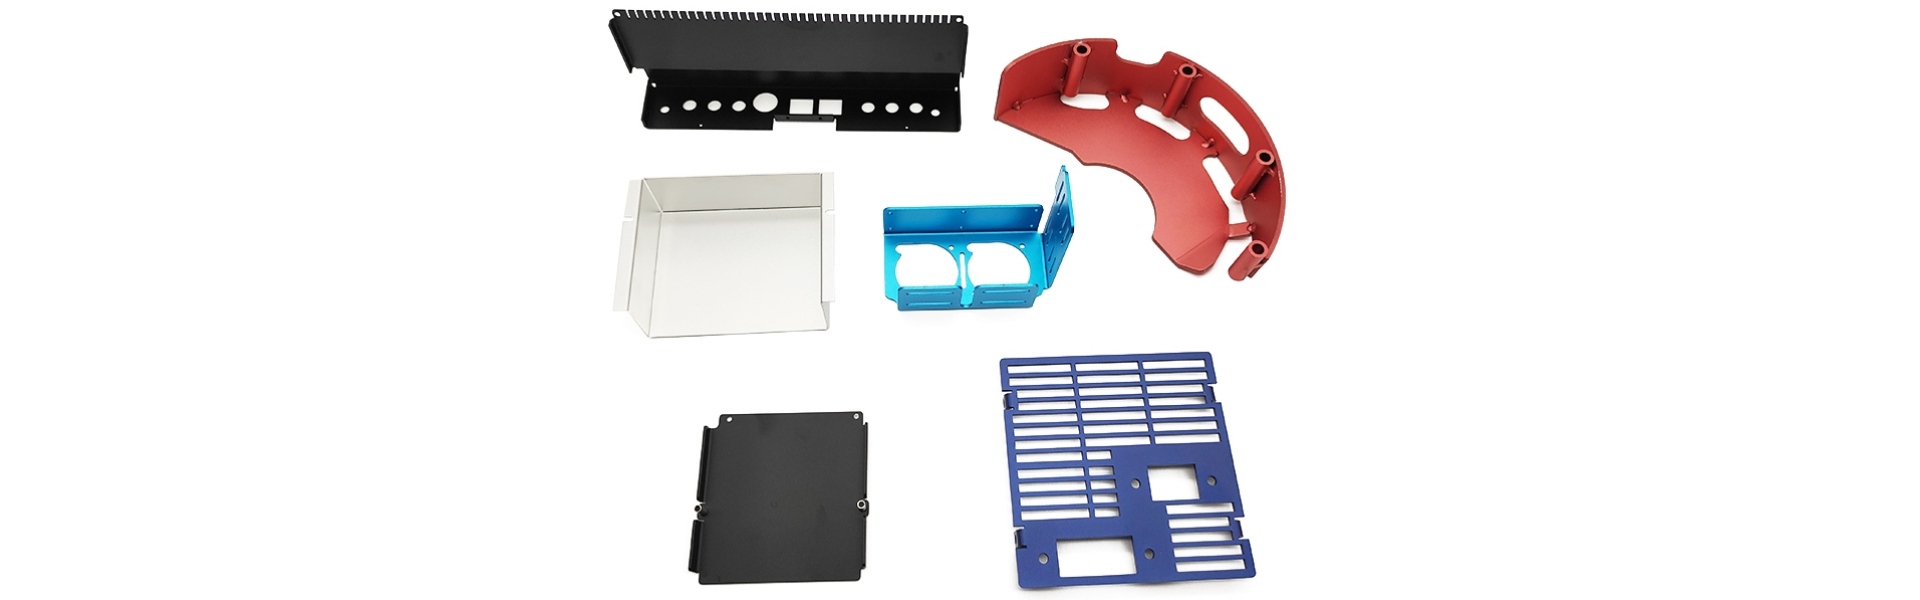 Výroba plechu, kovové lisovací díly, CNC obráběcí služba,Xucheng Precision Sheet metal Products Co., LTD